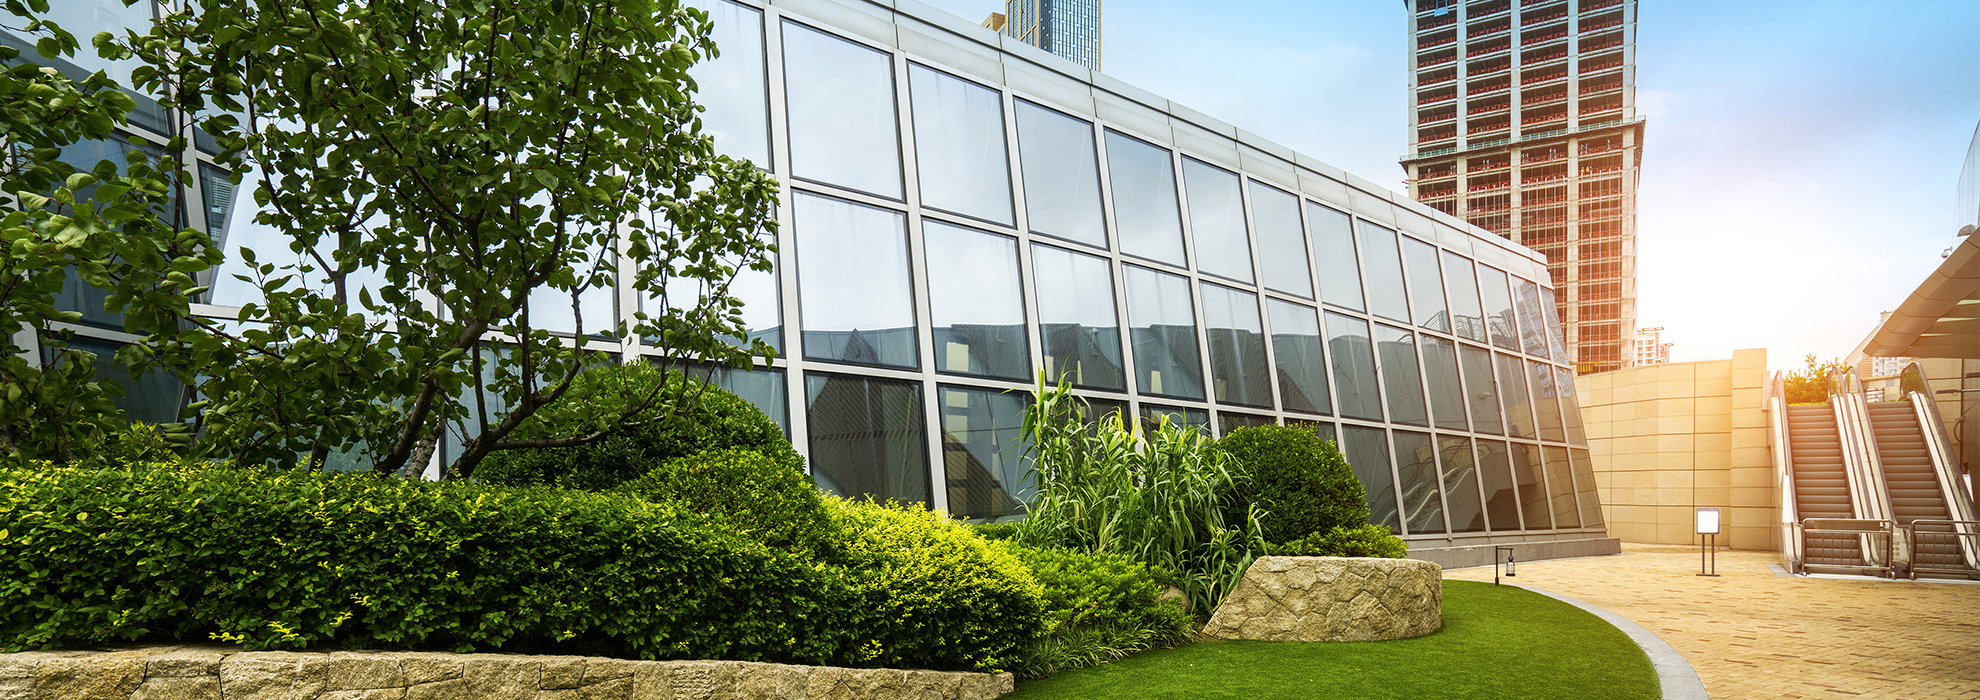 smart-building-edificio-inteligente-exterior-jardin